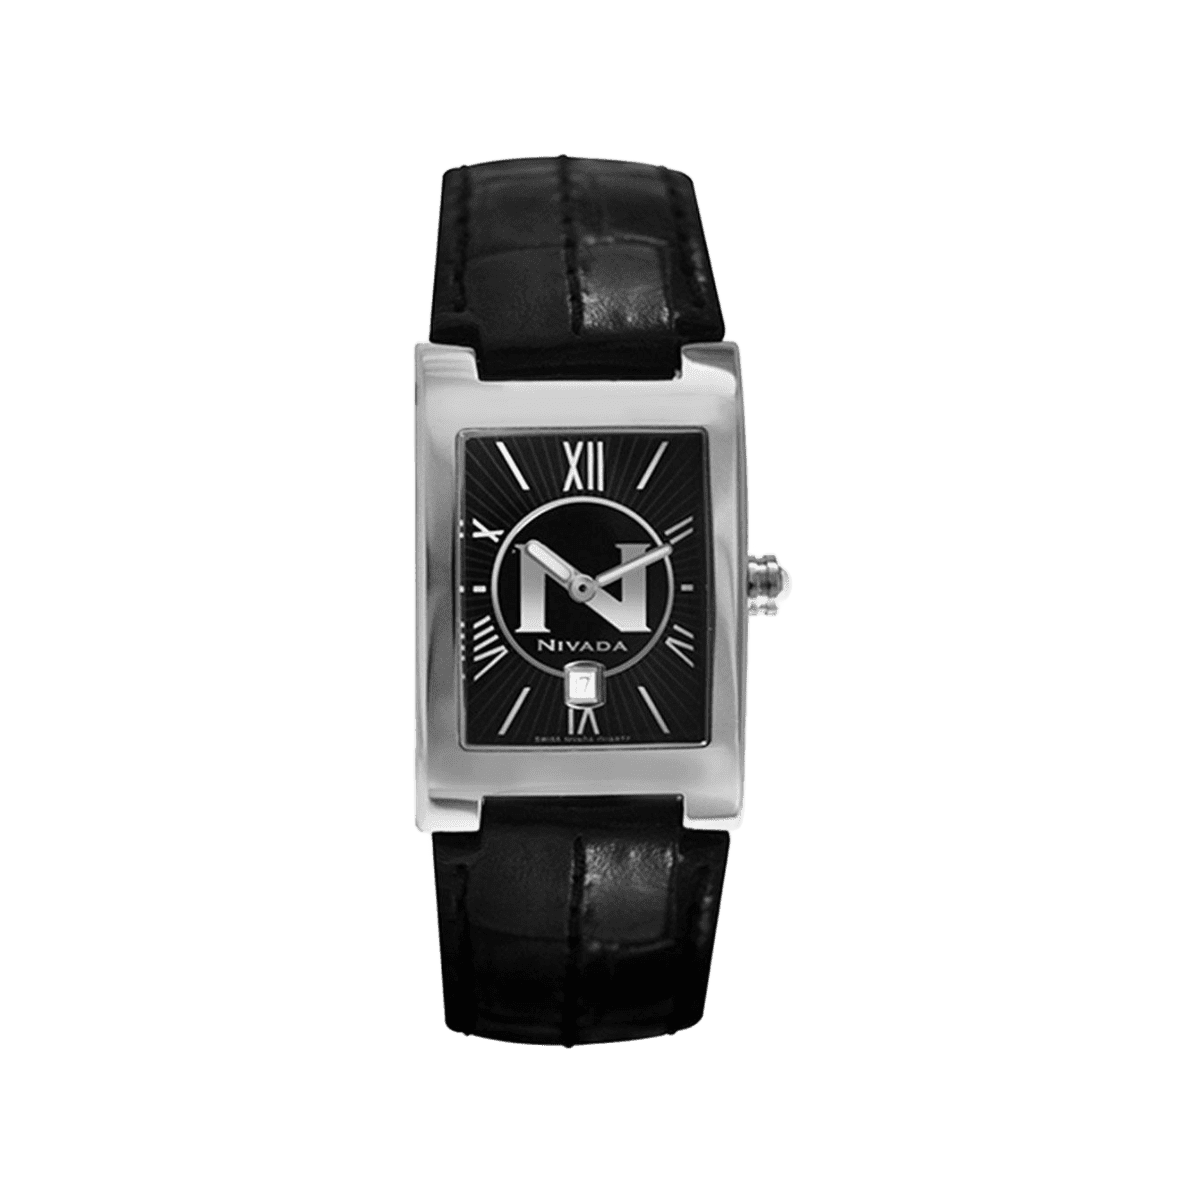 N Collection 2 Manecillas Fechador Para Dama - Altitud 384 - Reloj Nivada Swiss